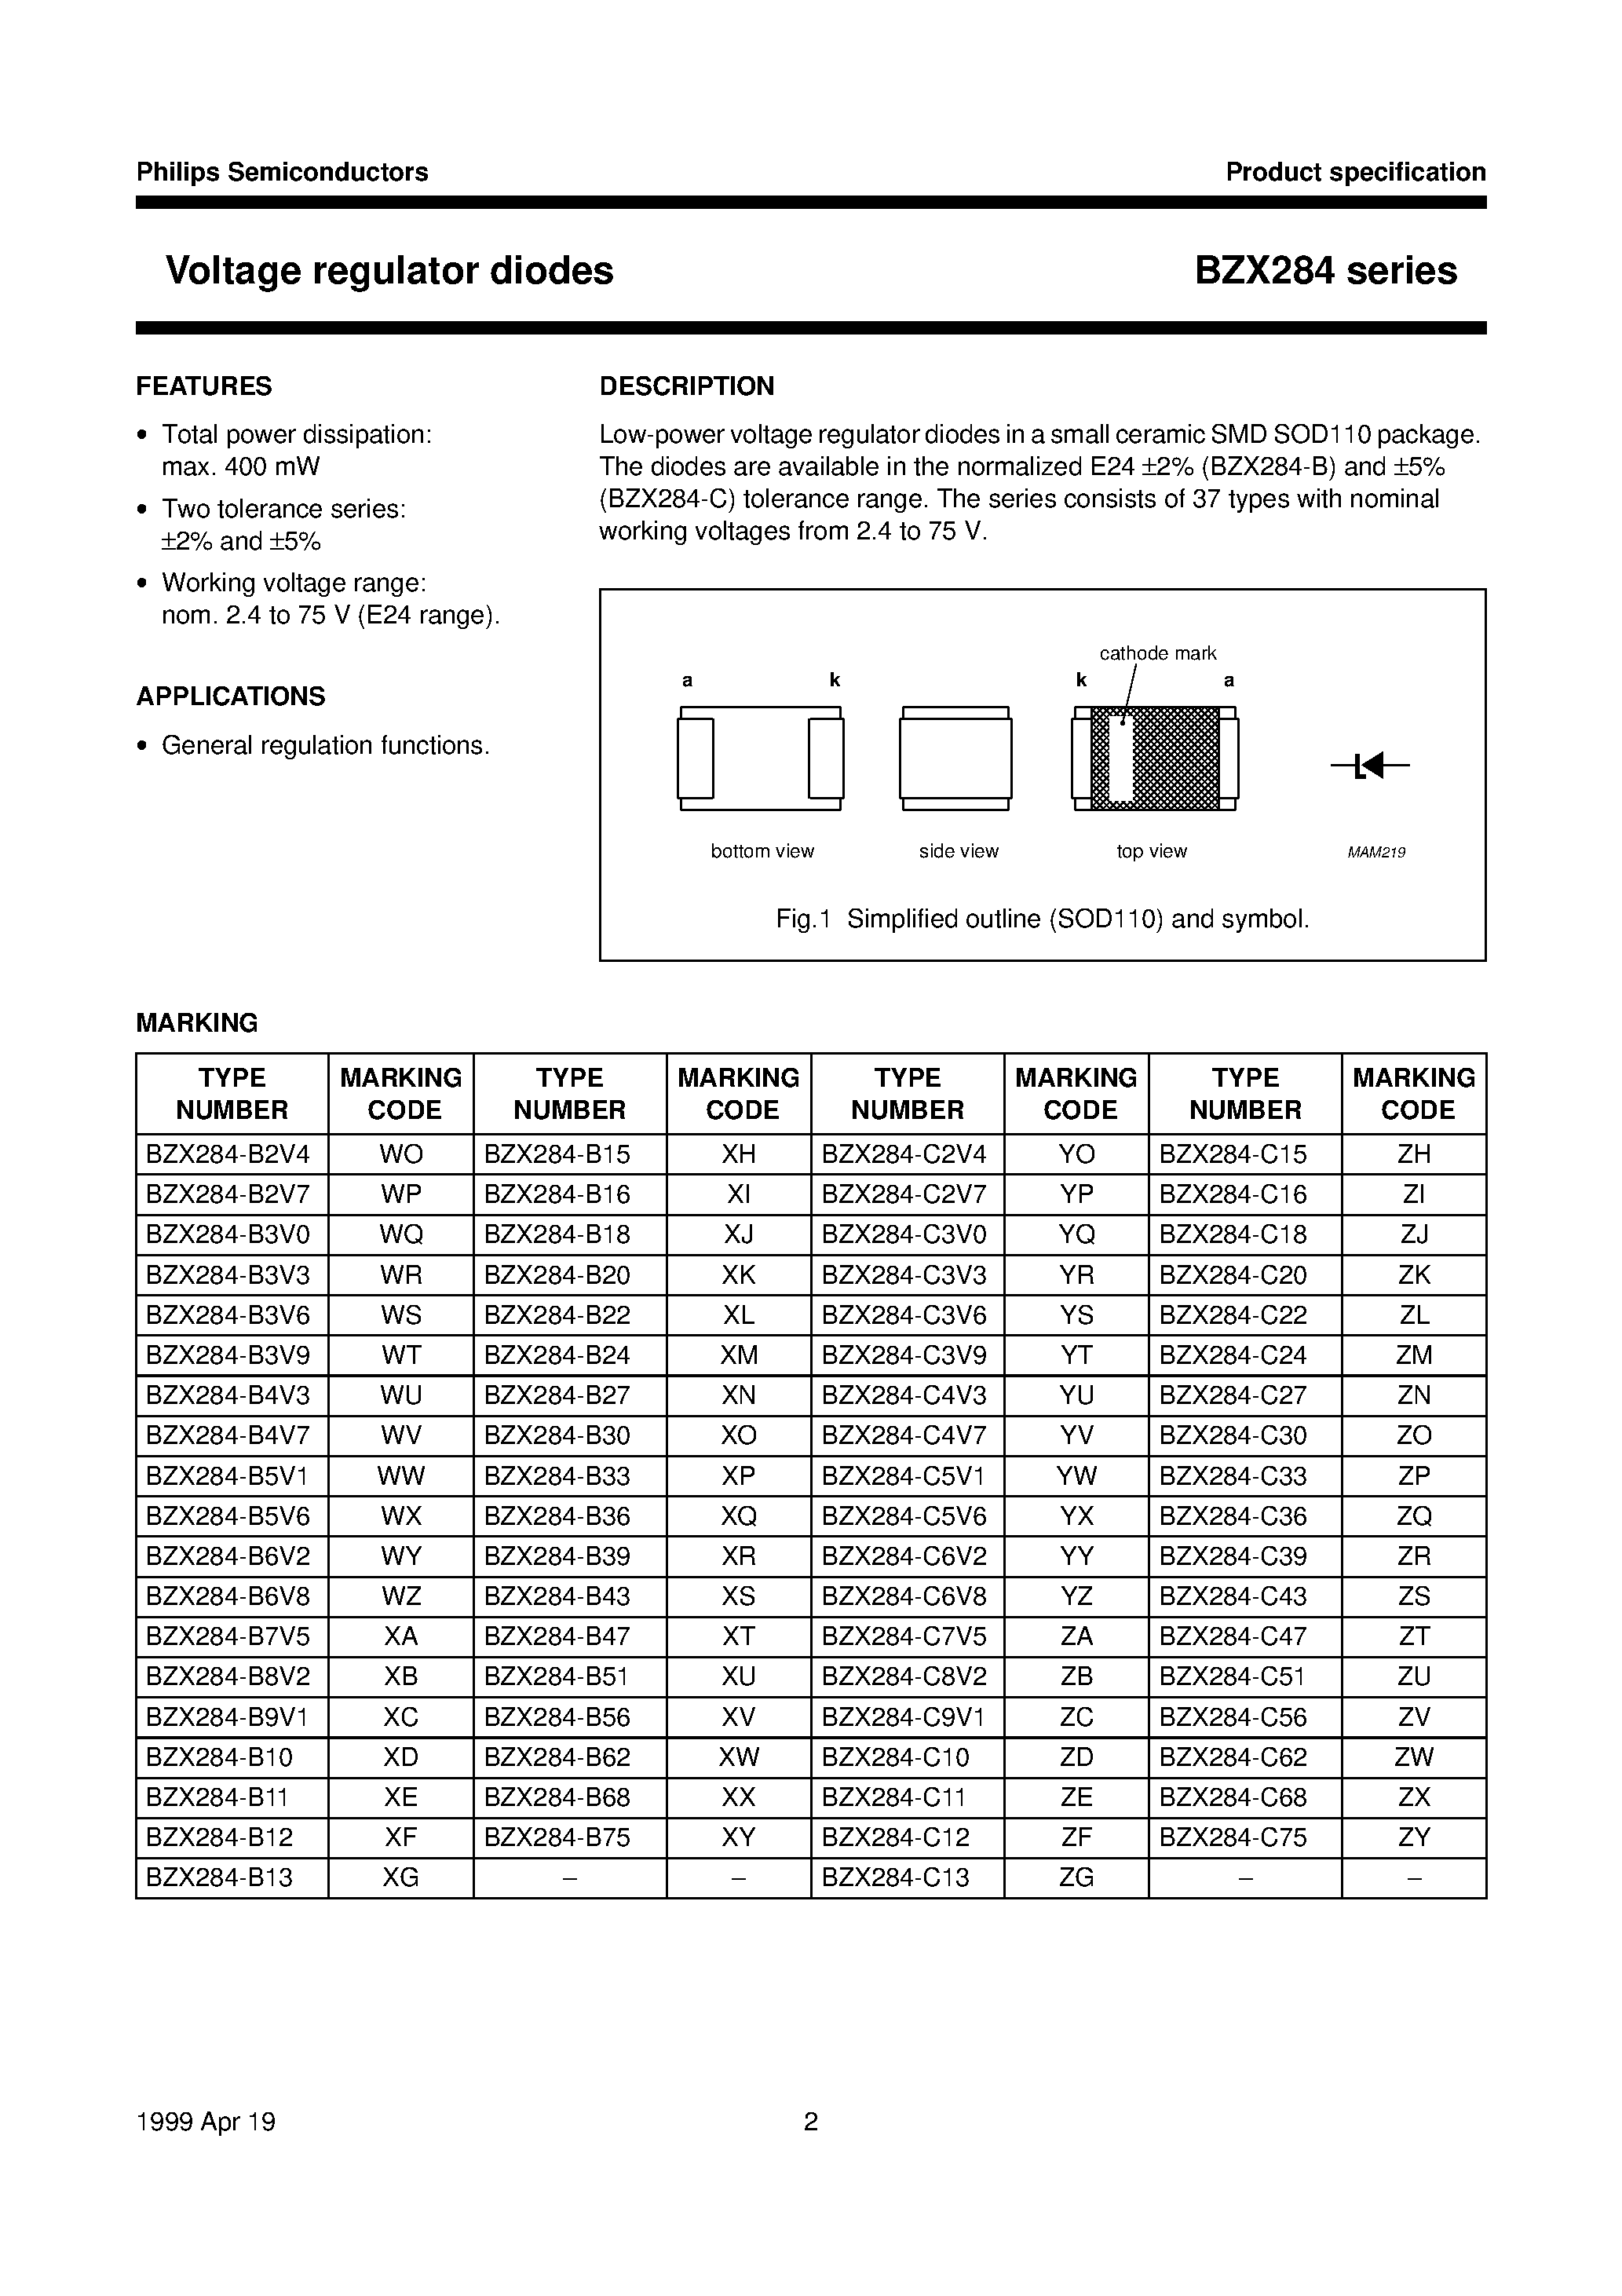 Даташит BZX284-B5V6 - Voltage regulator diodes страница 2